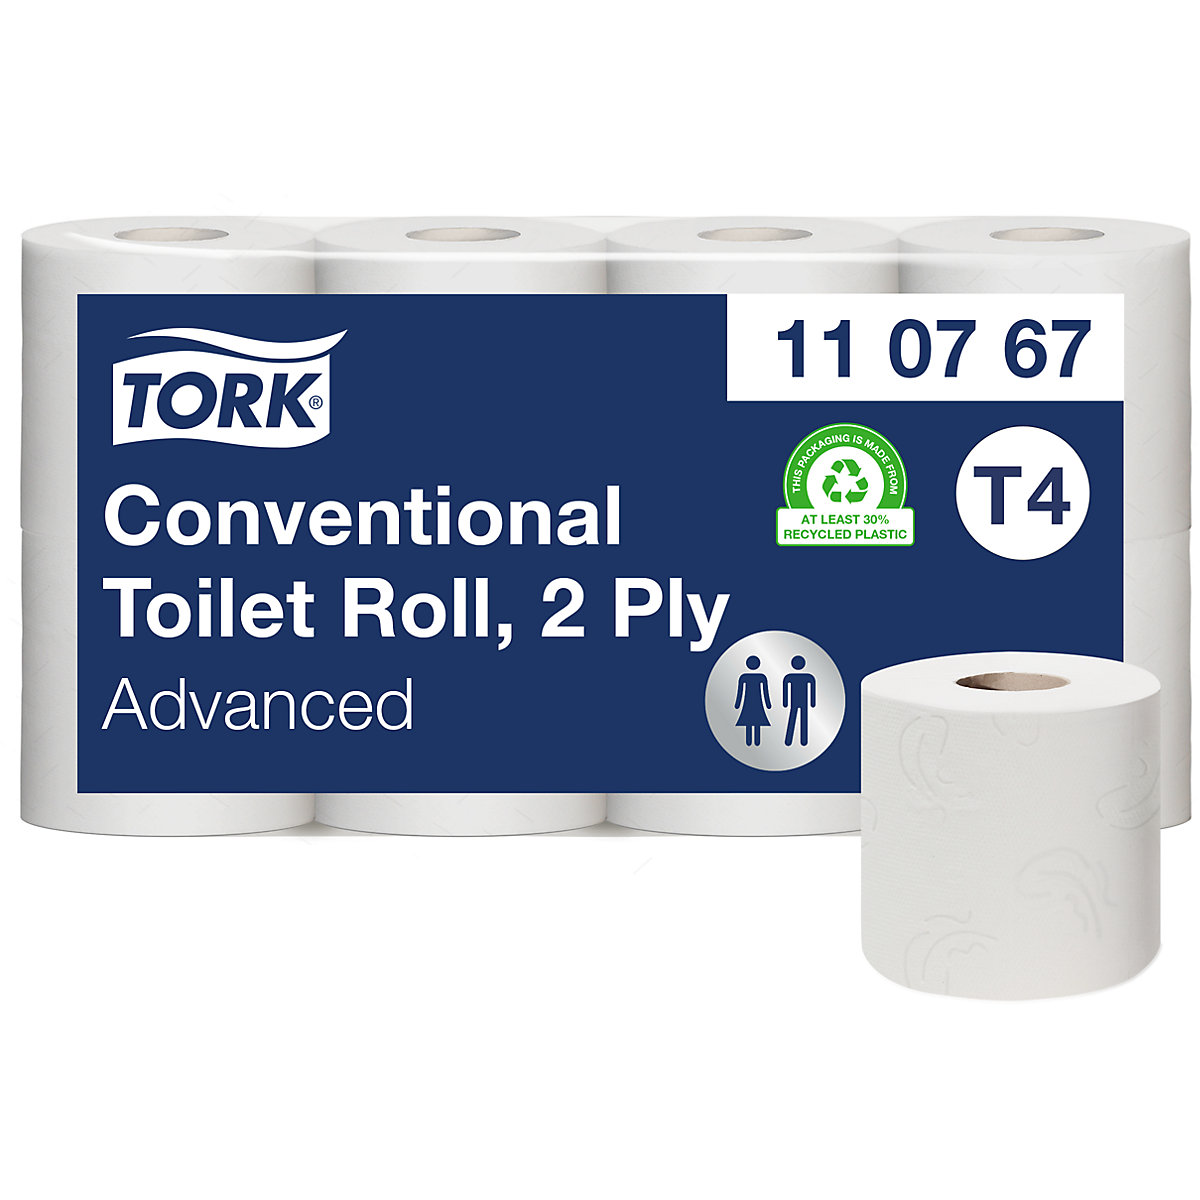 Toaletni papir v majhnih rolah, gospodinjska rola - TORK